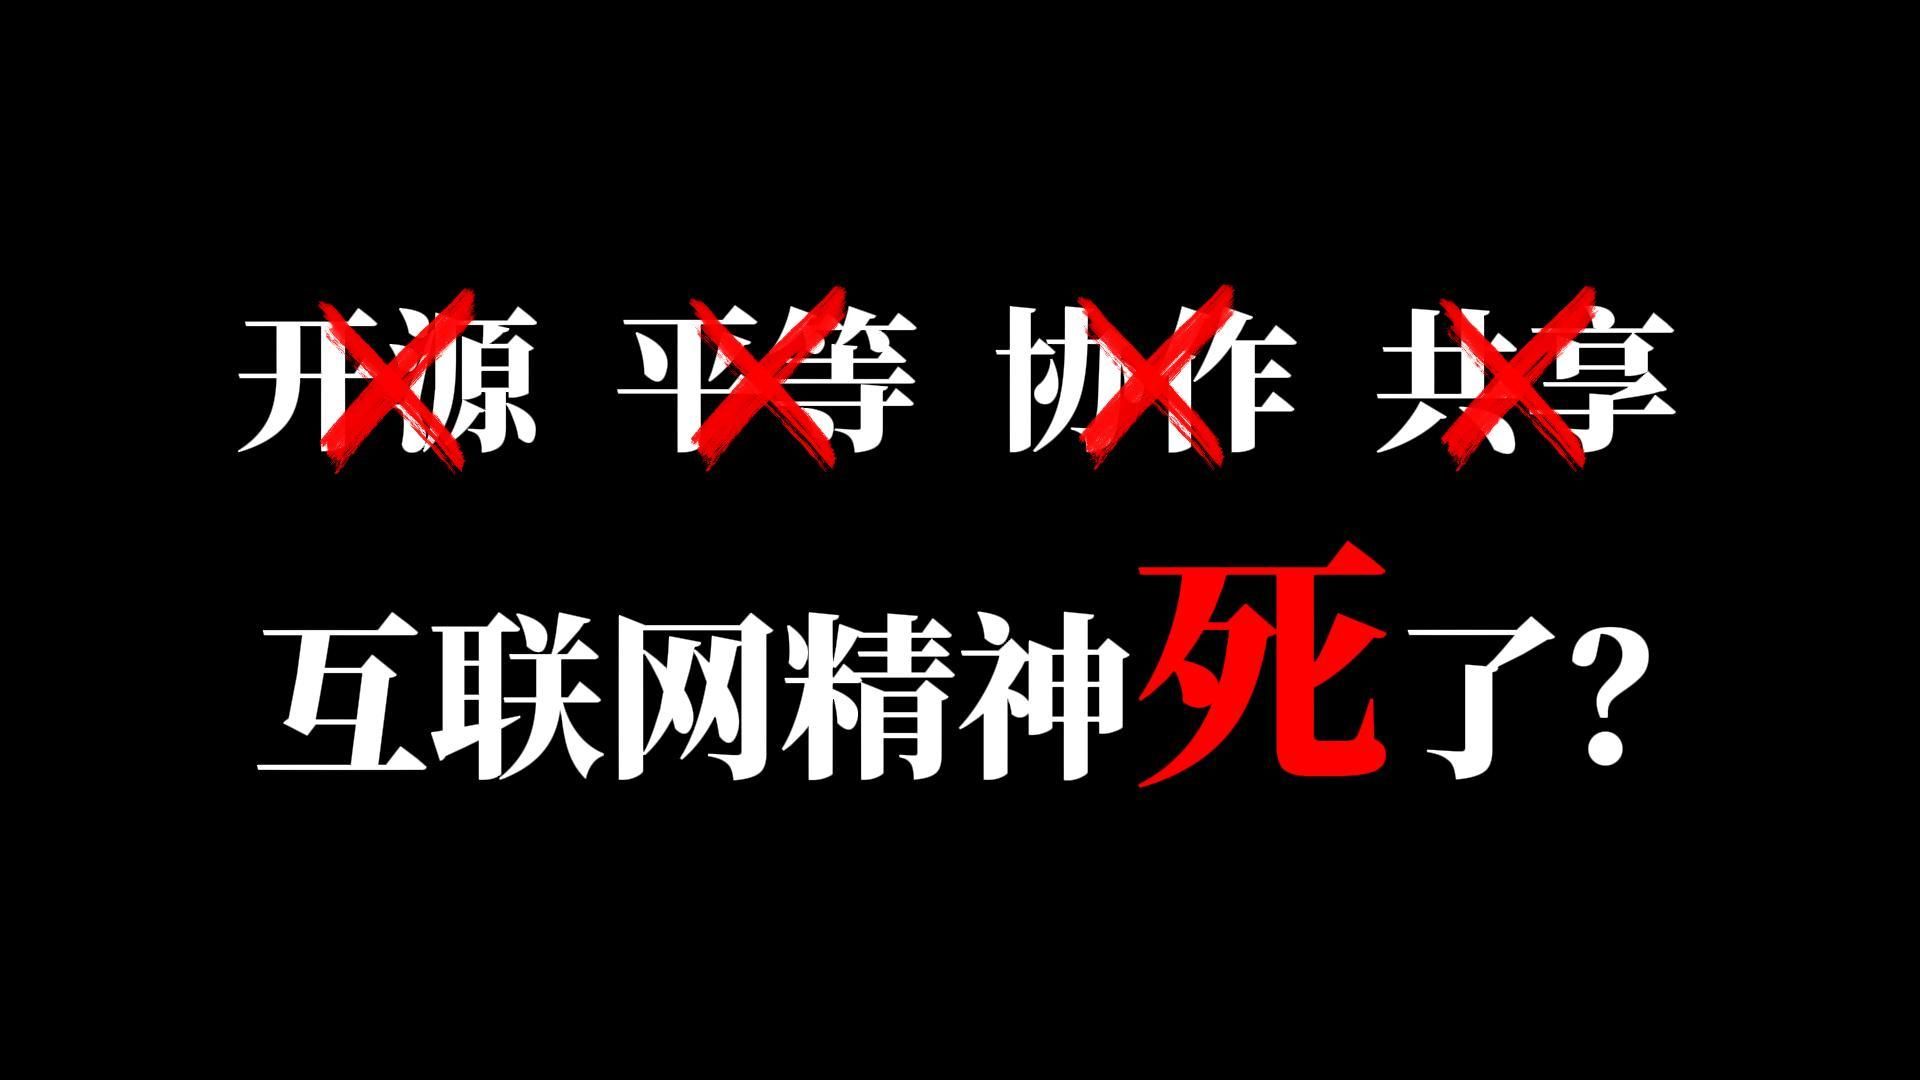 鬼故事：“赛博文盲”正在占领中文互联网